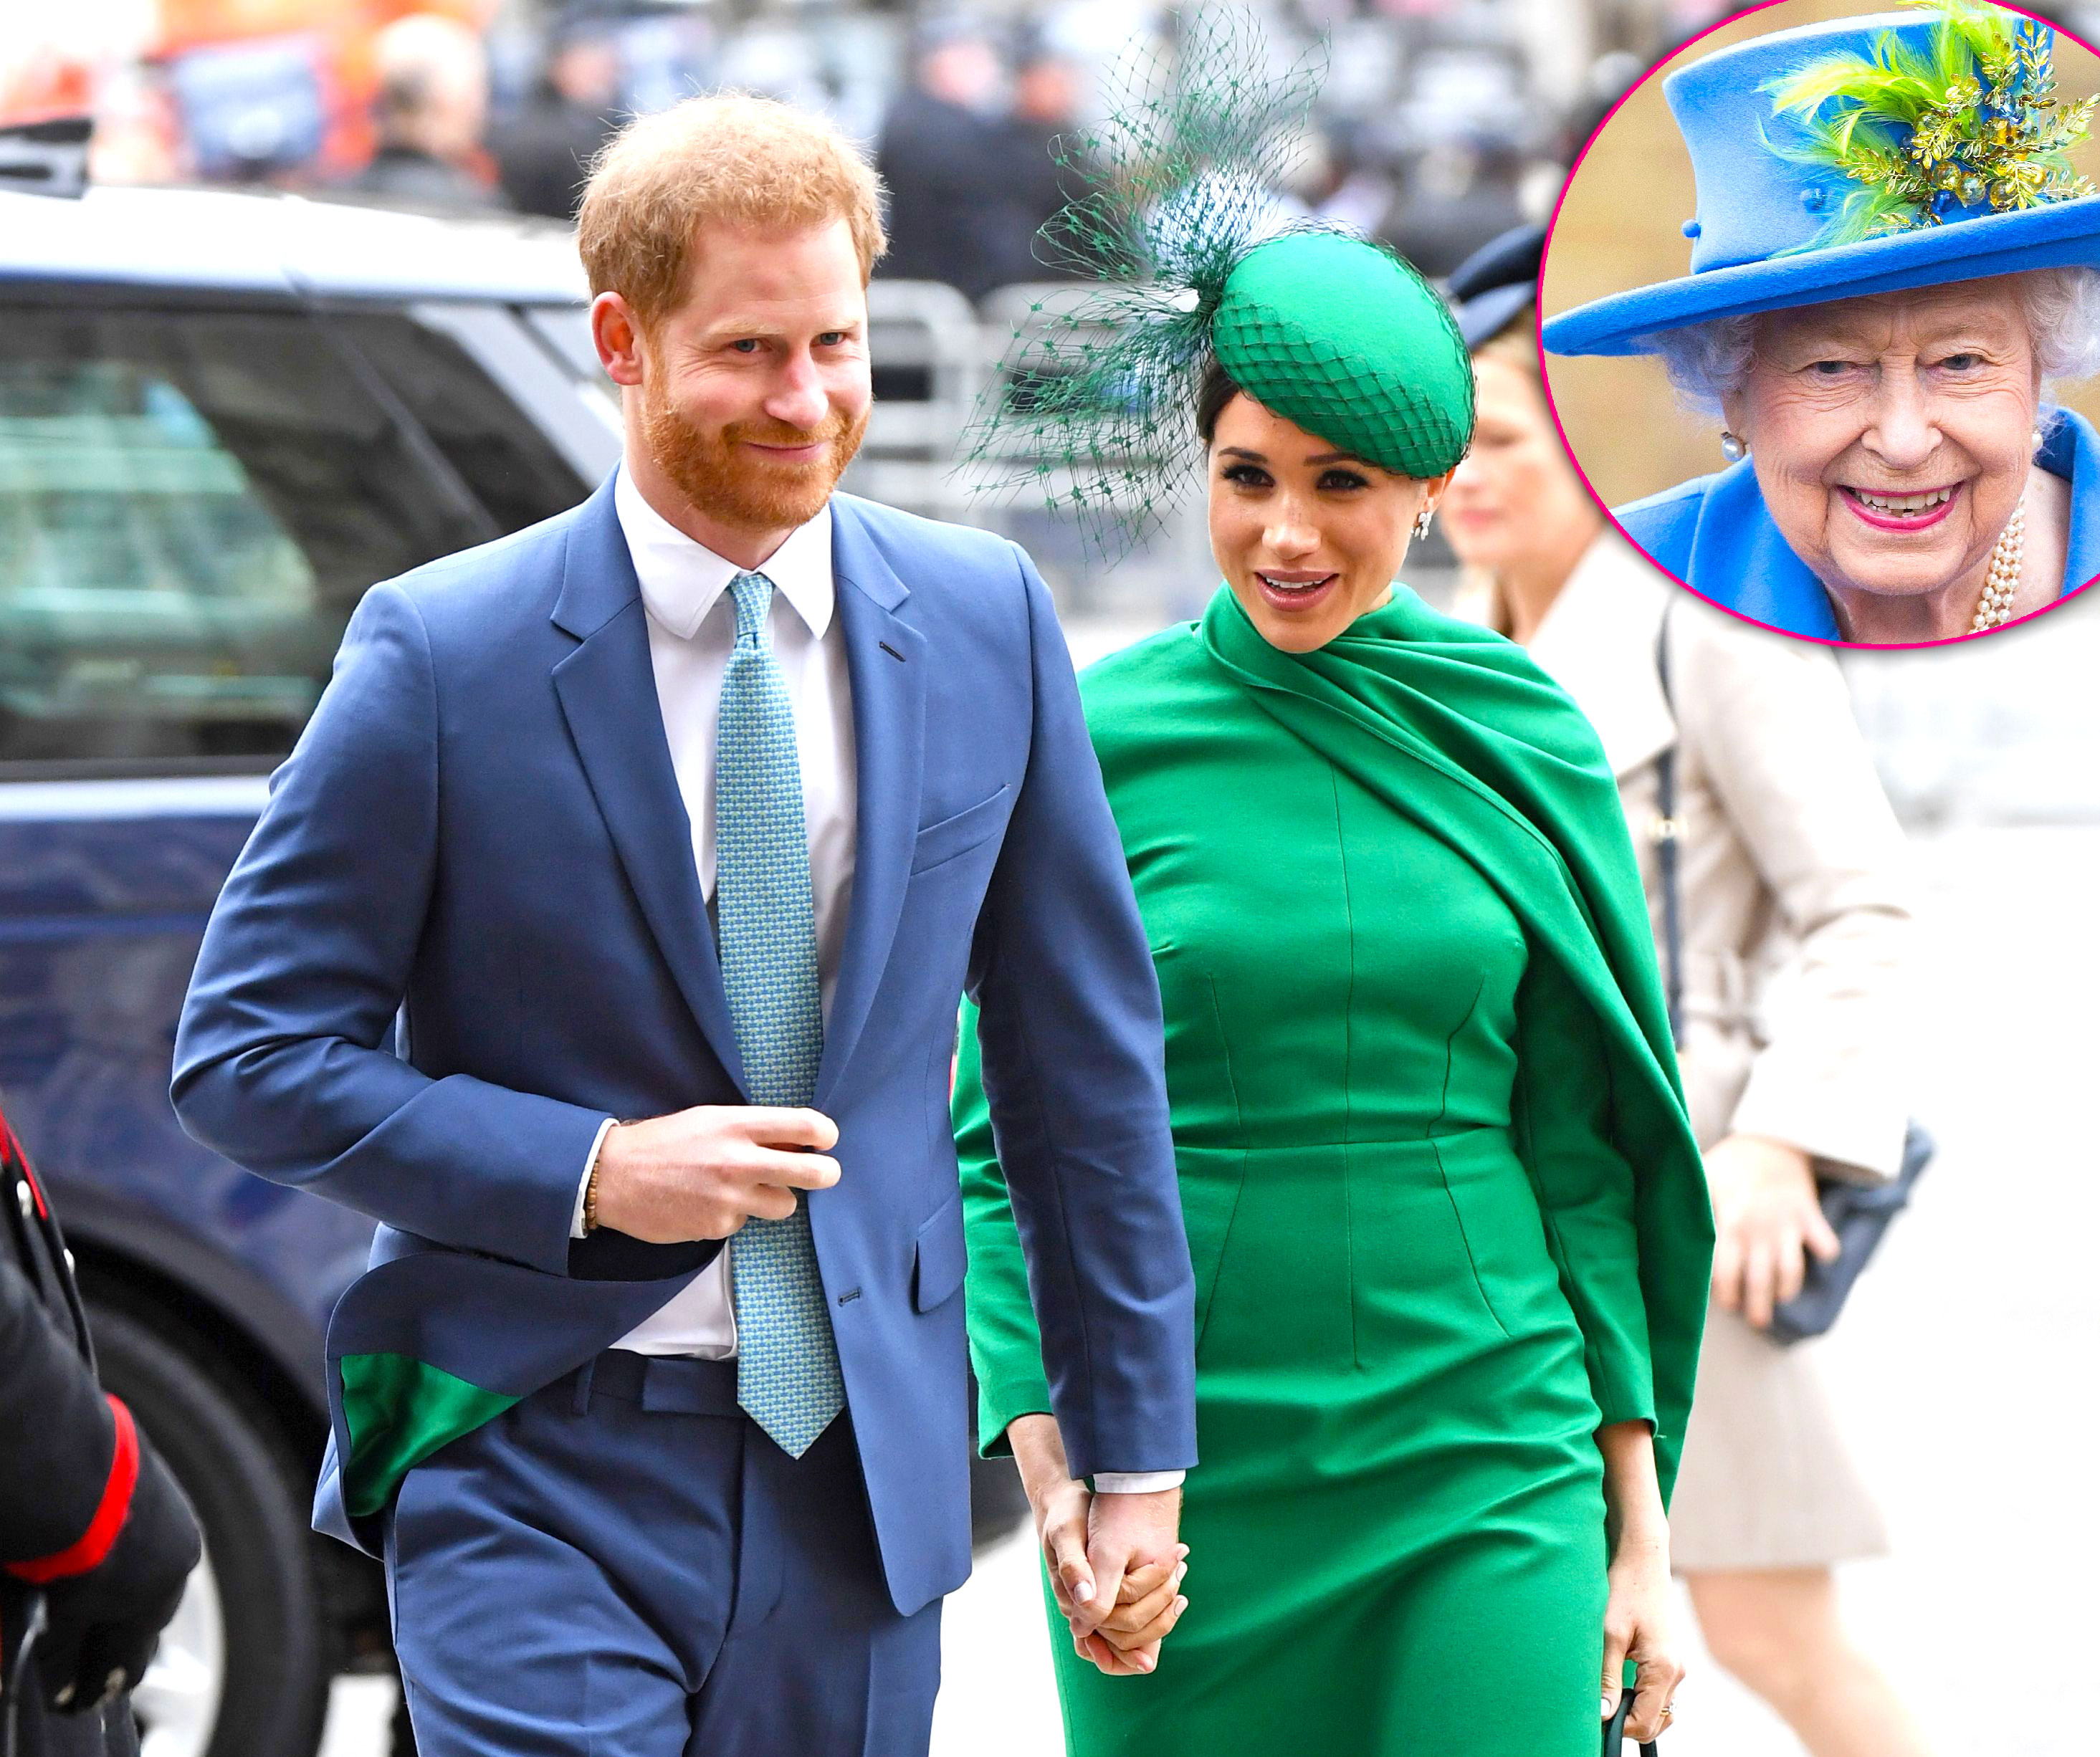 Le Prince Harry Meghan Markle Et Archie Rendront Visite à Queen à Balmoral Crumpe 